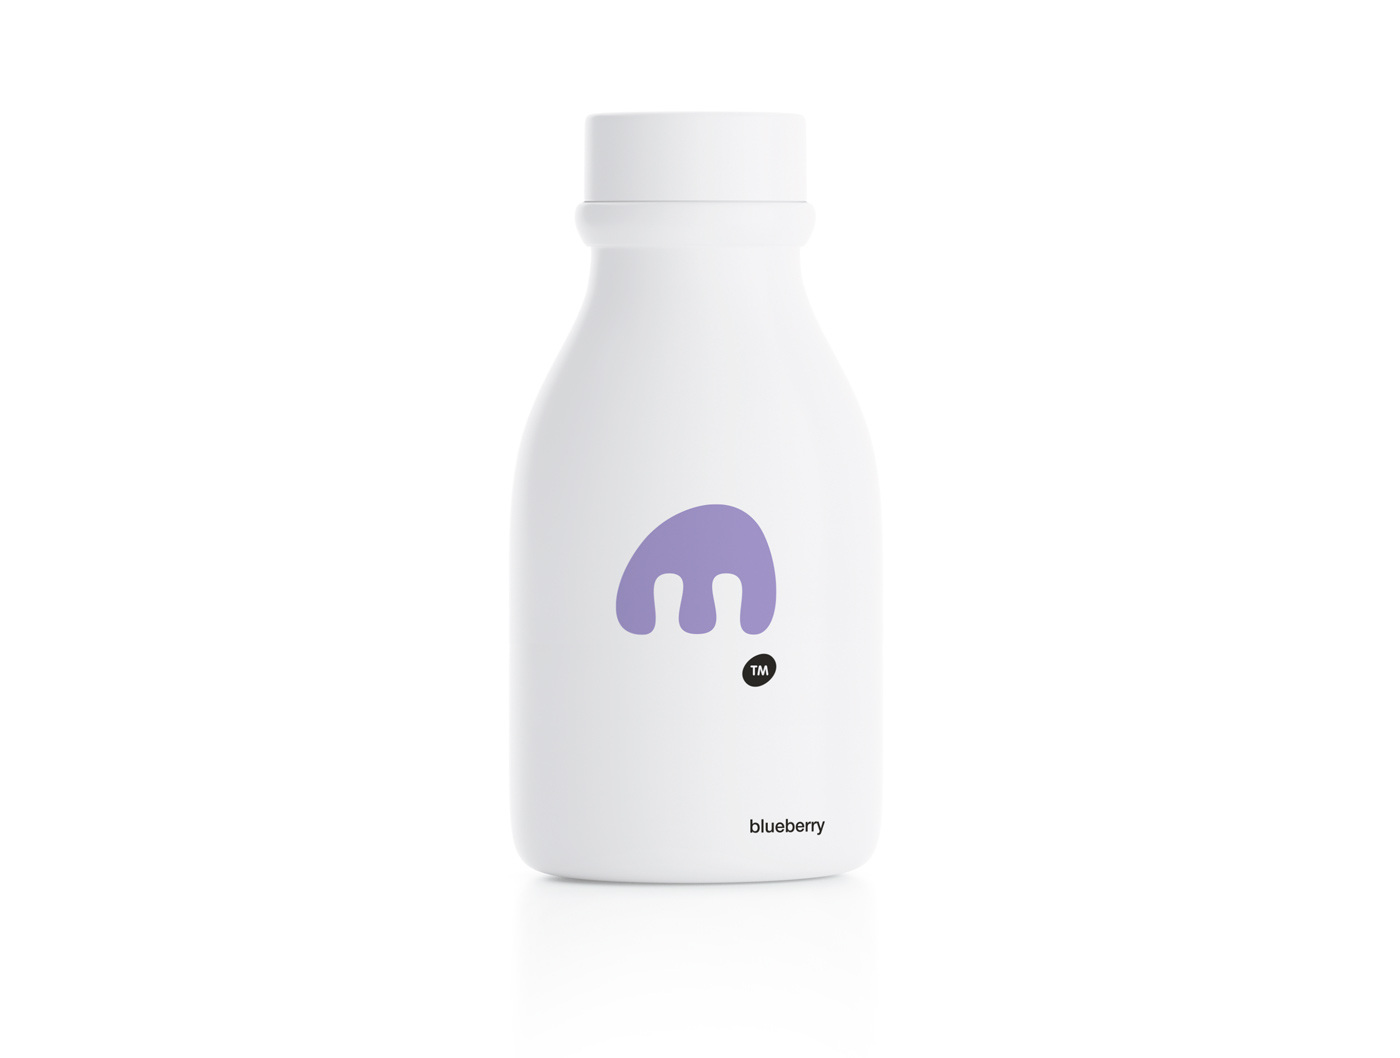 极简风格的MOO酸奶包装